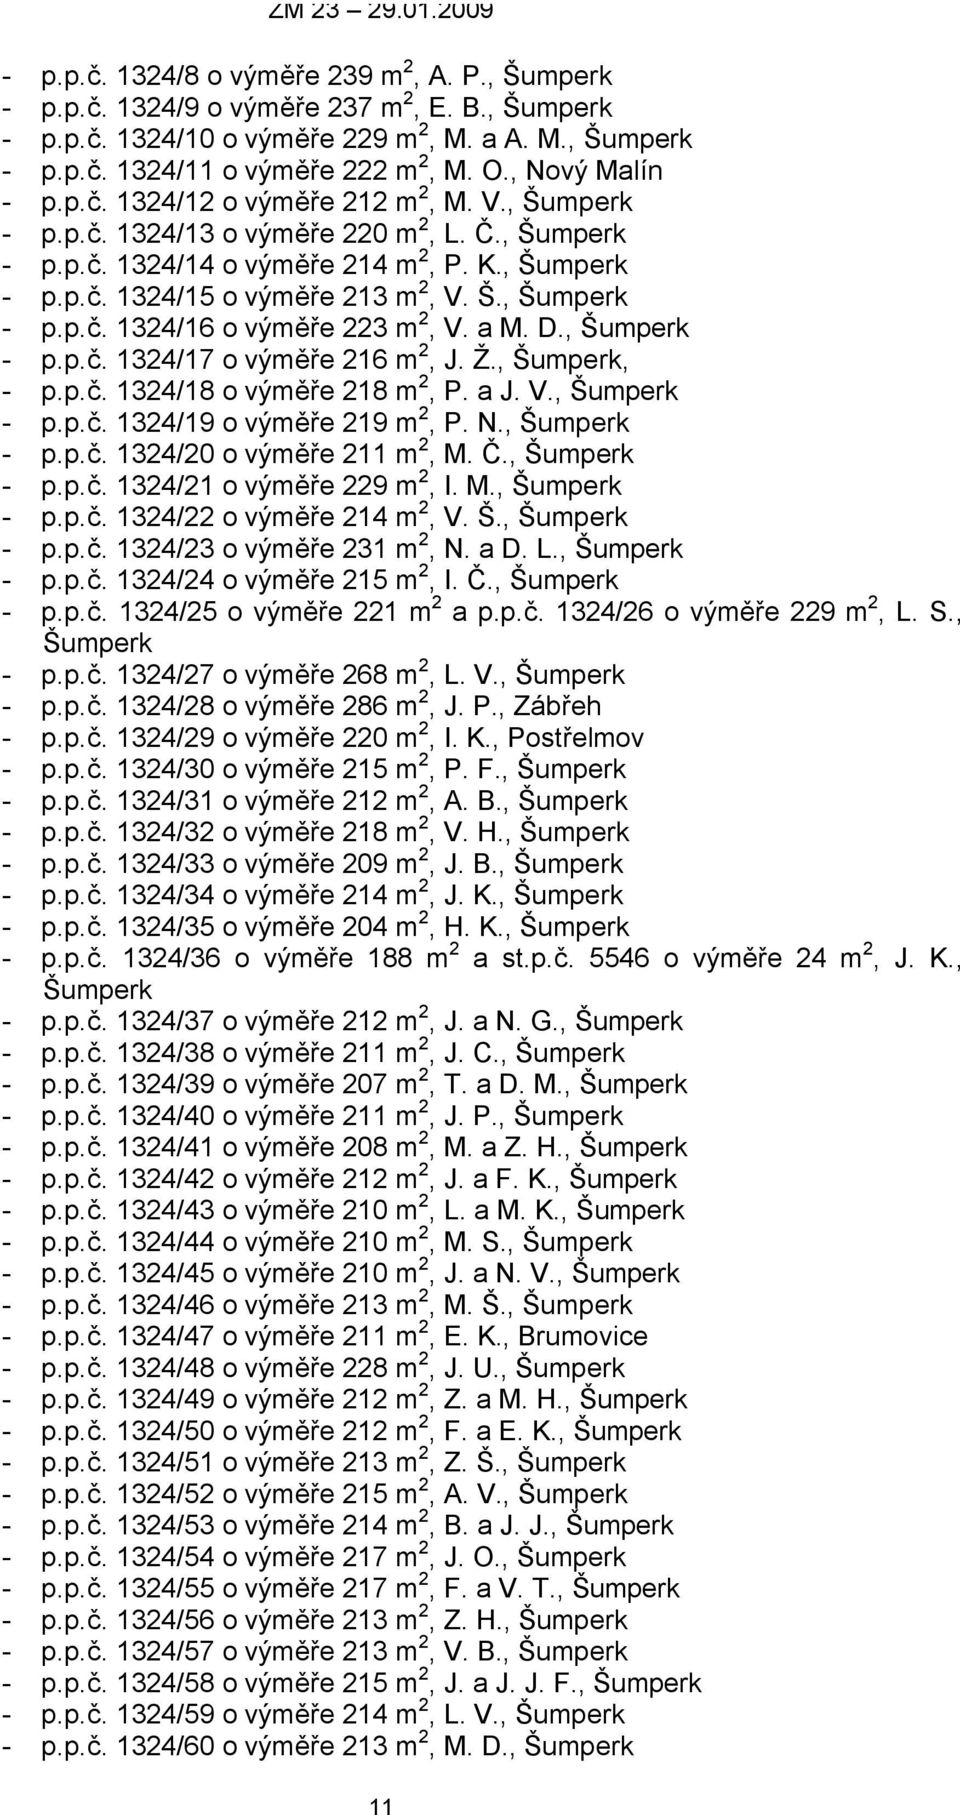 Š., Šumperk - p.p.č. 1324/16 o výměře 223 m 2, V. a M. D., Šumperk - p.p.č. 1324/17 o výměře 216 m 2, J. Ž., Šumperk, - p.p.č. 1324/18 o výměře 218 m 2, P. a J. V., Šumperk - p.p.č. 1324/19 o výměře 219 m 2, P.